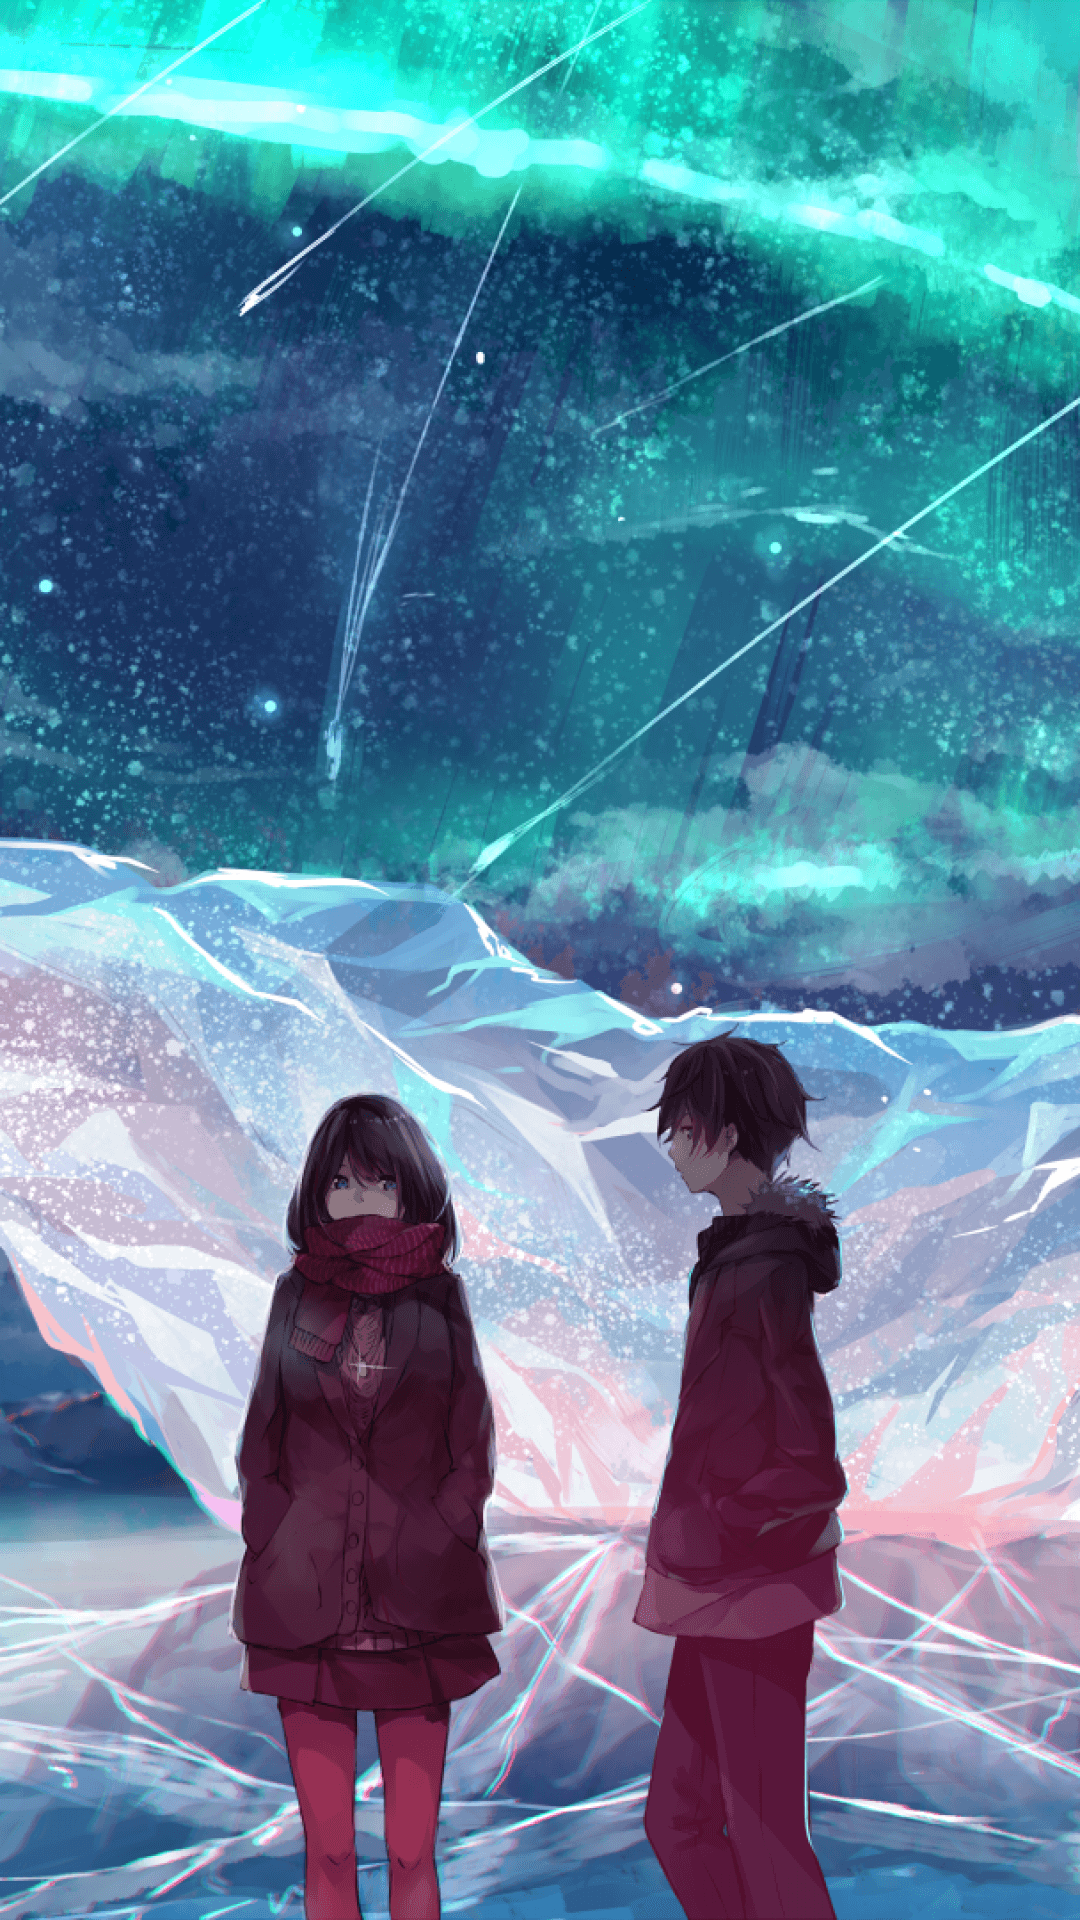 Anime Couple, Ice Field, Scarf, Anime Girl, Boy